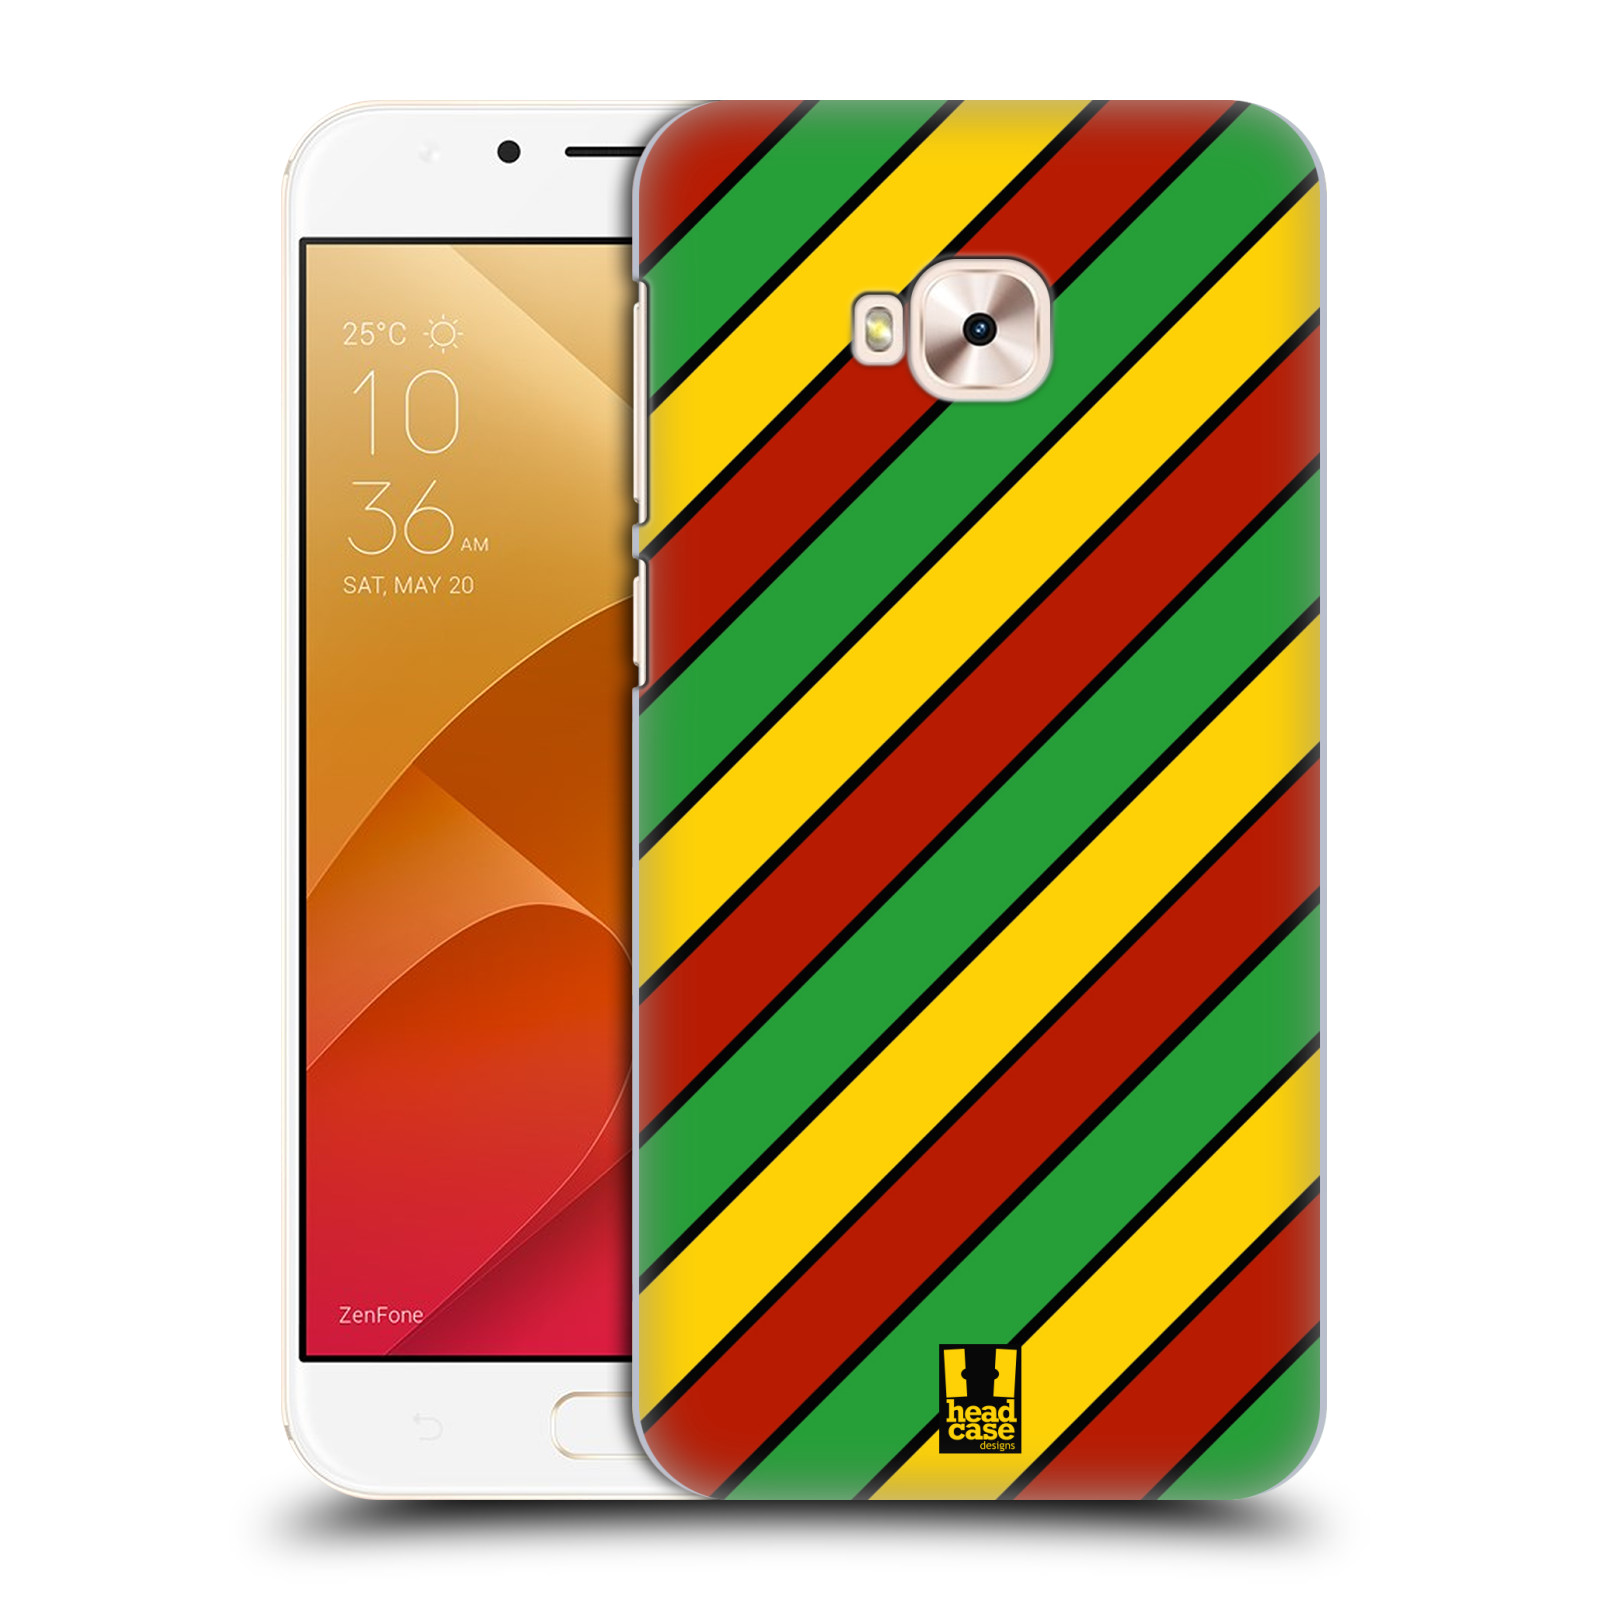 HEAD CASE plastový obal na mobil Asus Zenfone 4 Selfie Pro ZD552KL vzor Rasta barevné vzory PRUHY